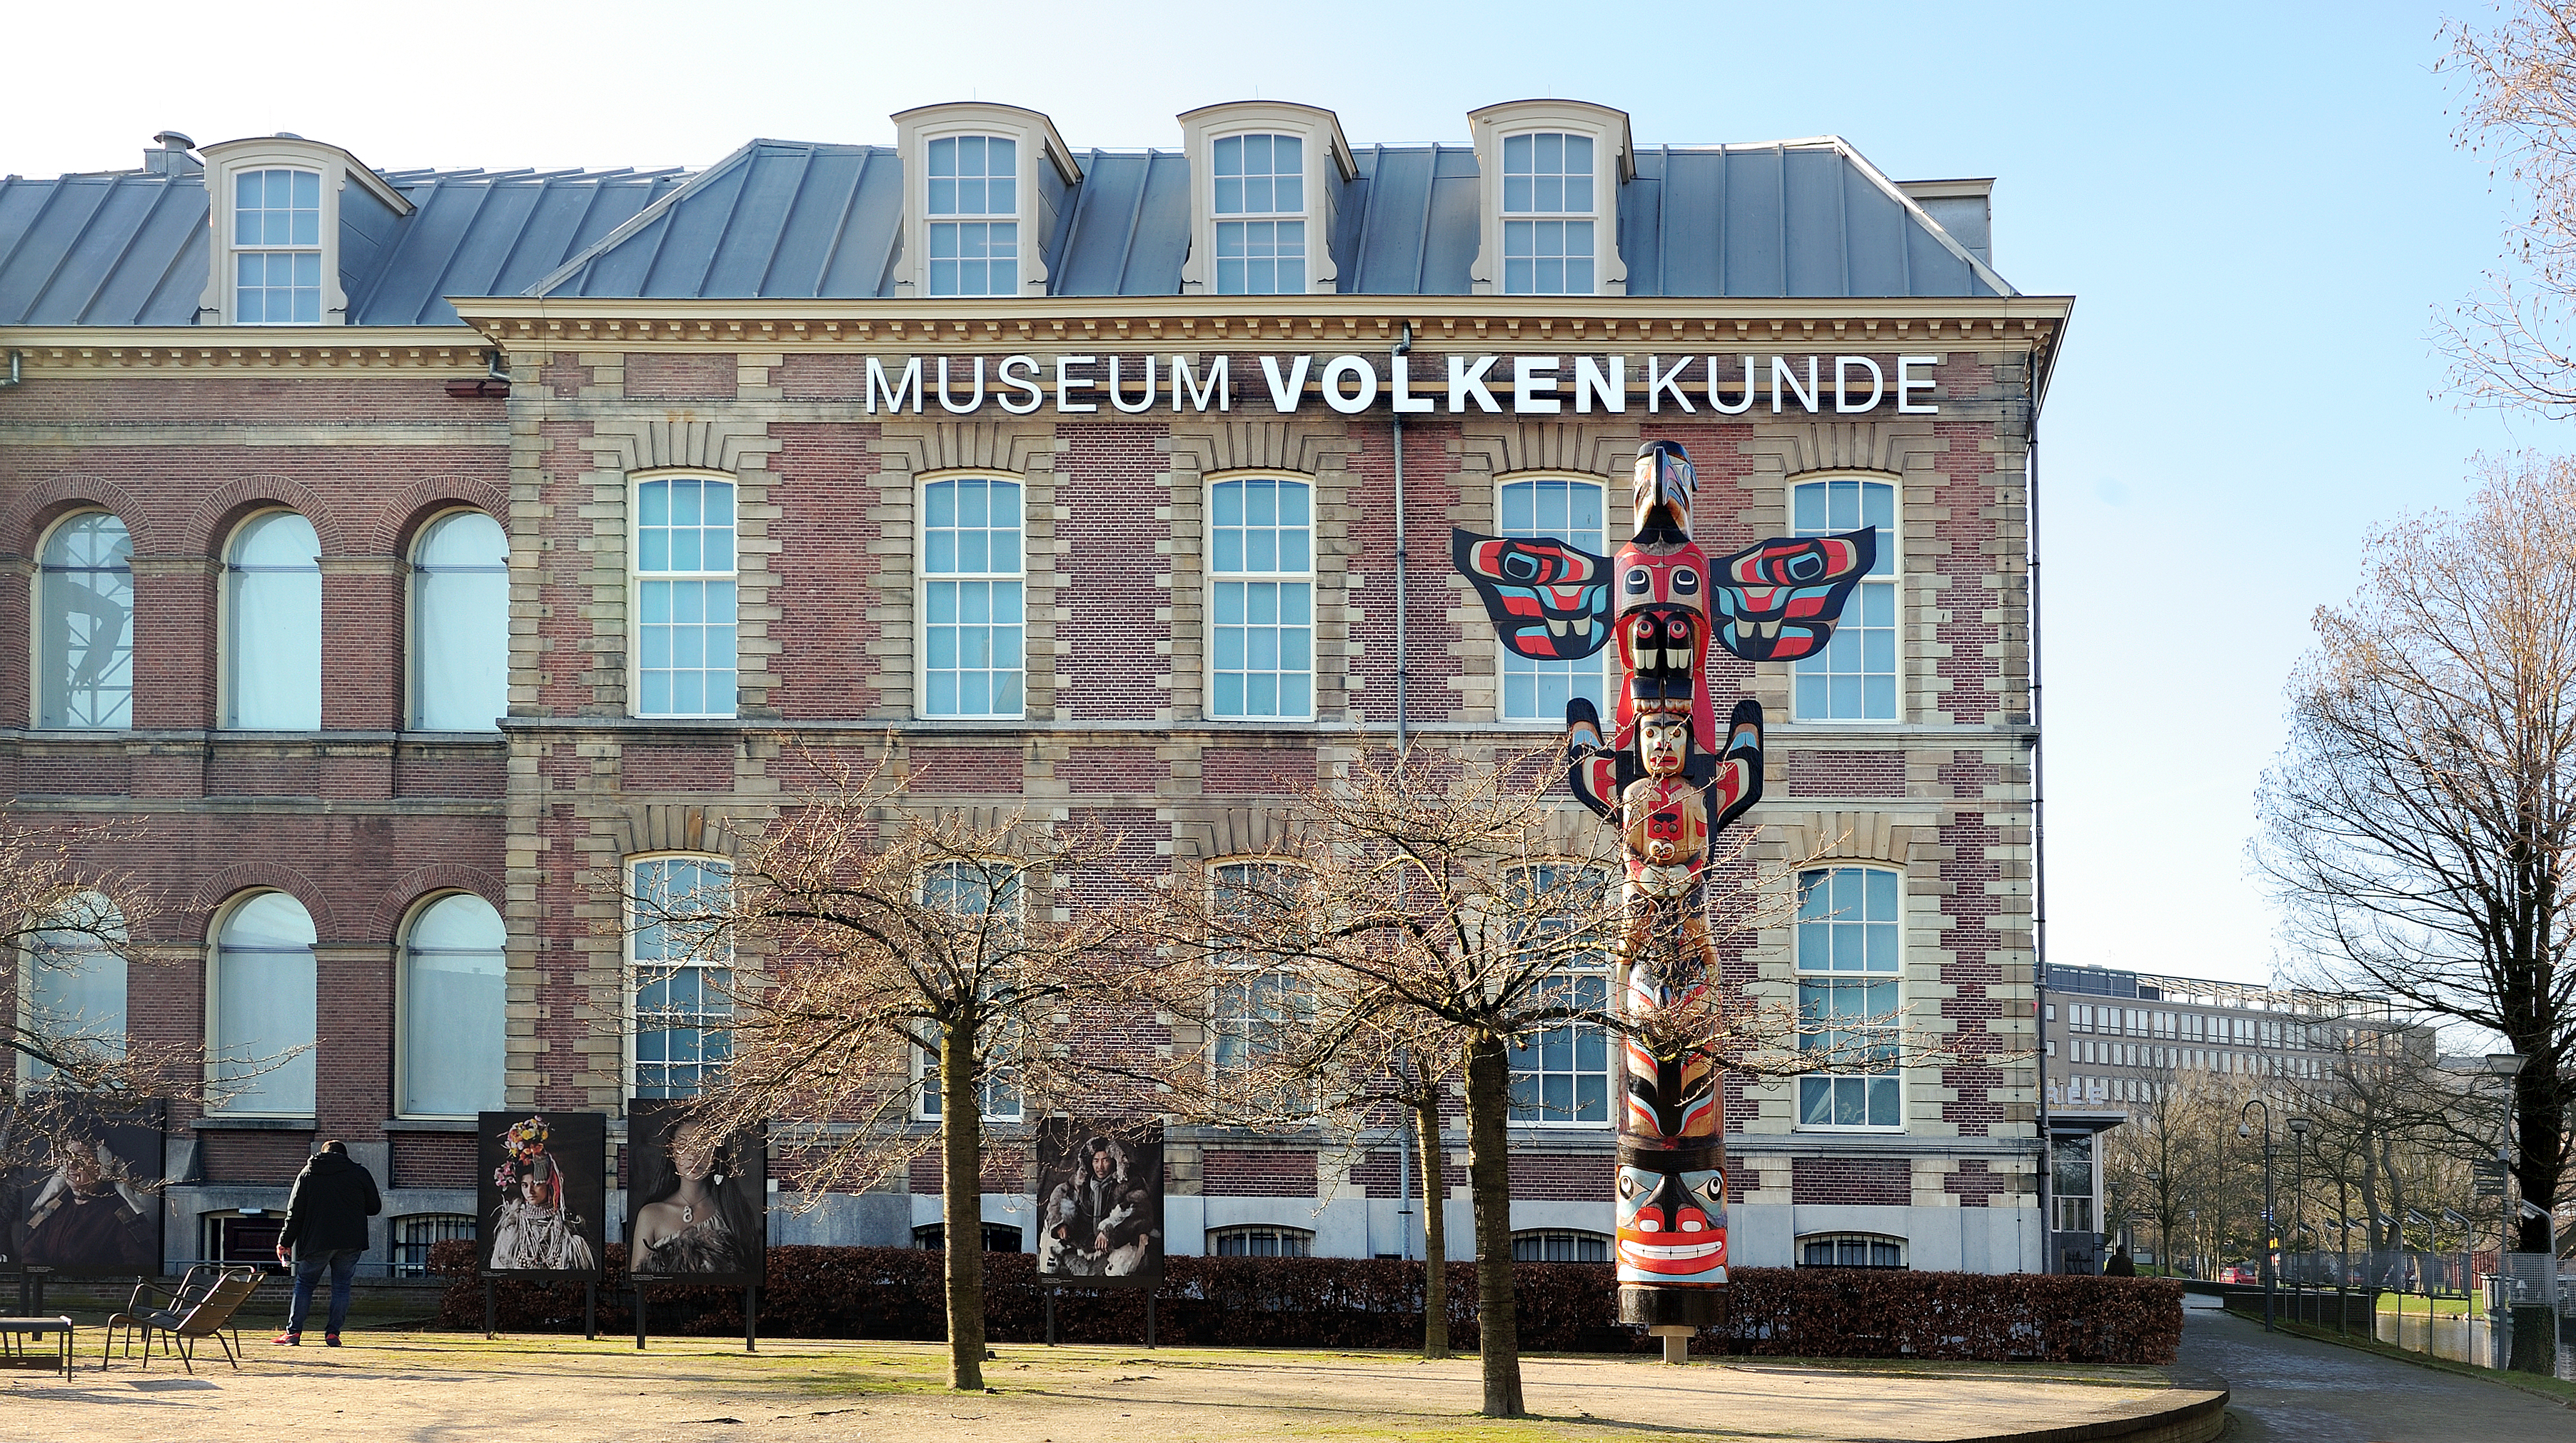 Bảo tàng Dân tộc học Quốc gia - National Museum of Ethnology - Leiden - Hà Lan